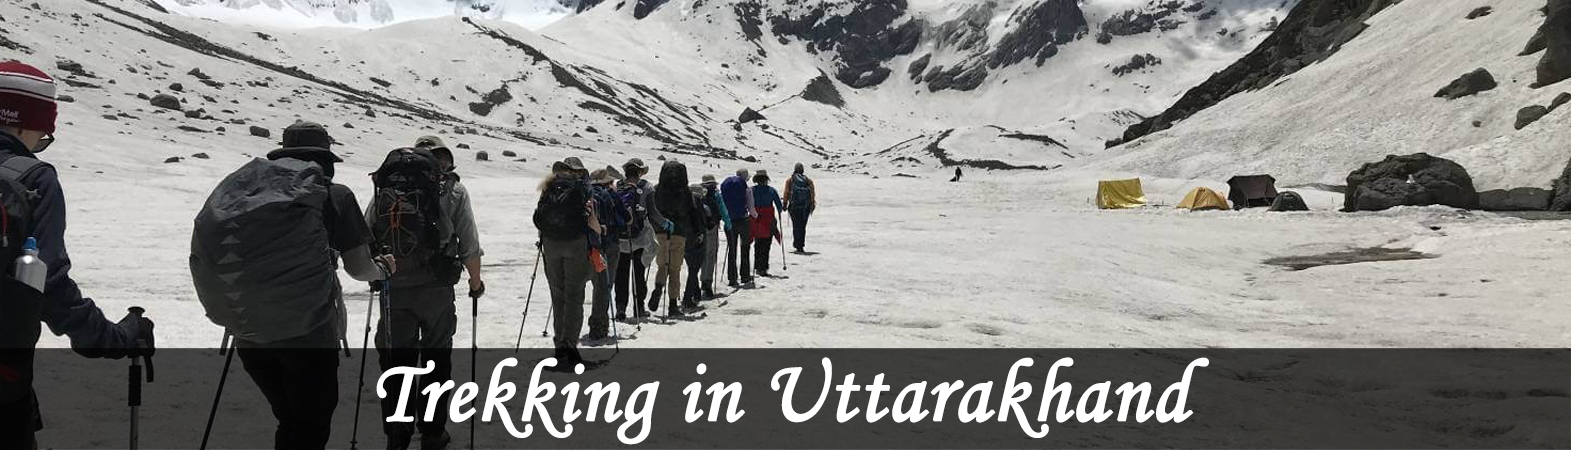 trekking in uttarakhand, uttarakhand Trekking, trekking tour in uttarakhand